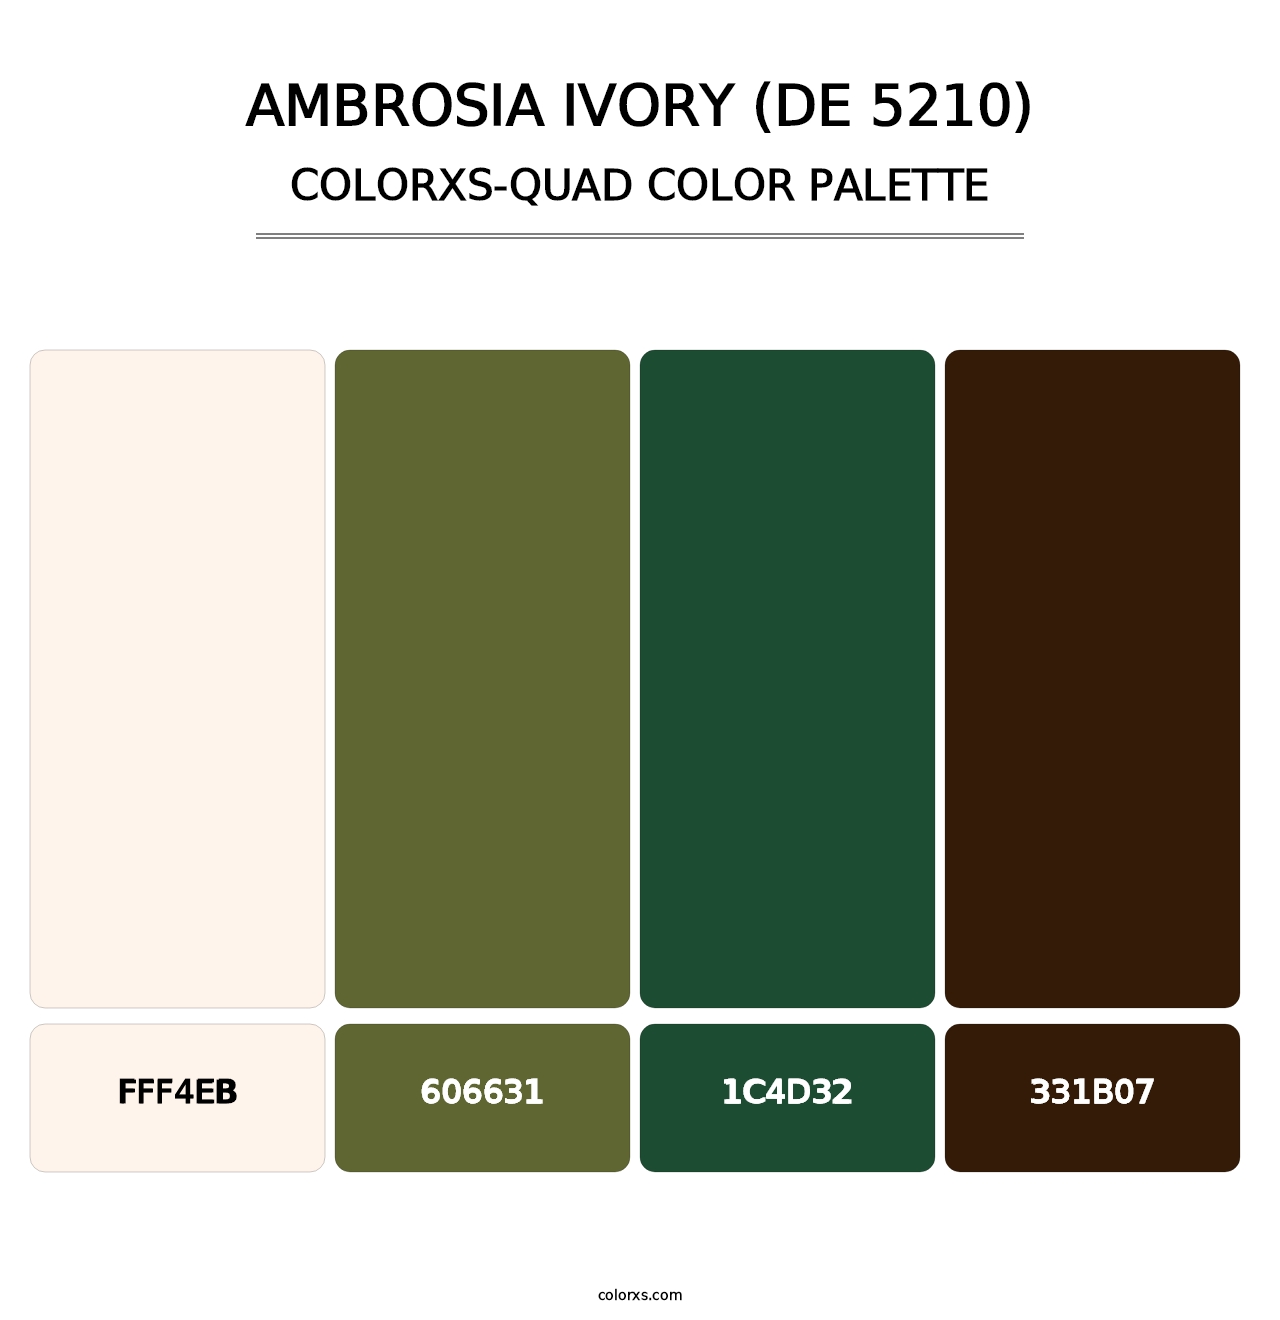 Ambrosia Ivory (DE 5210) - Colorxs Quad Palette